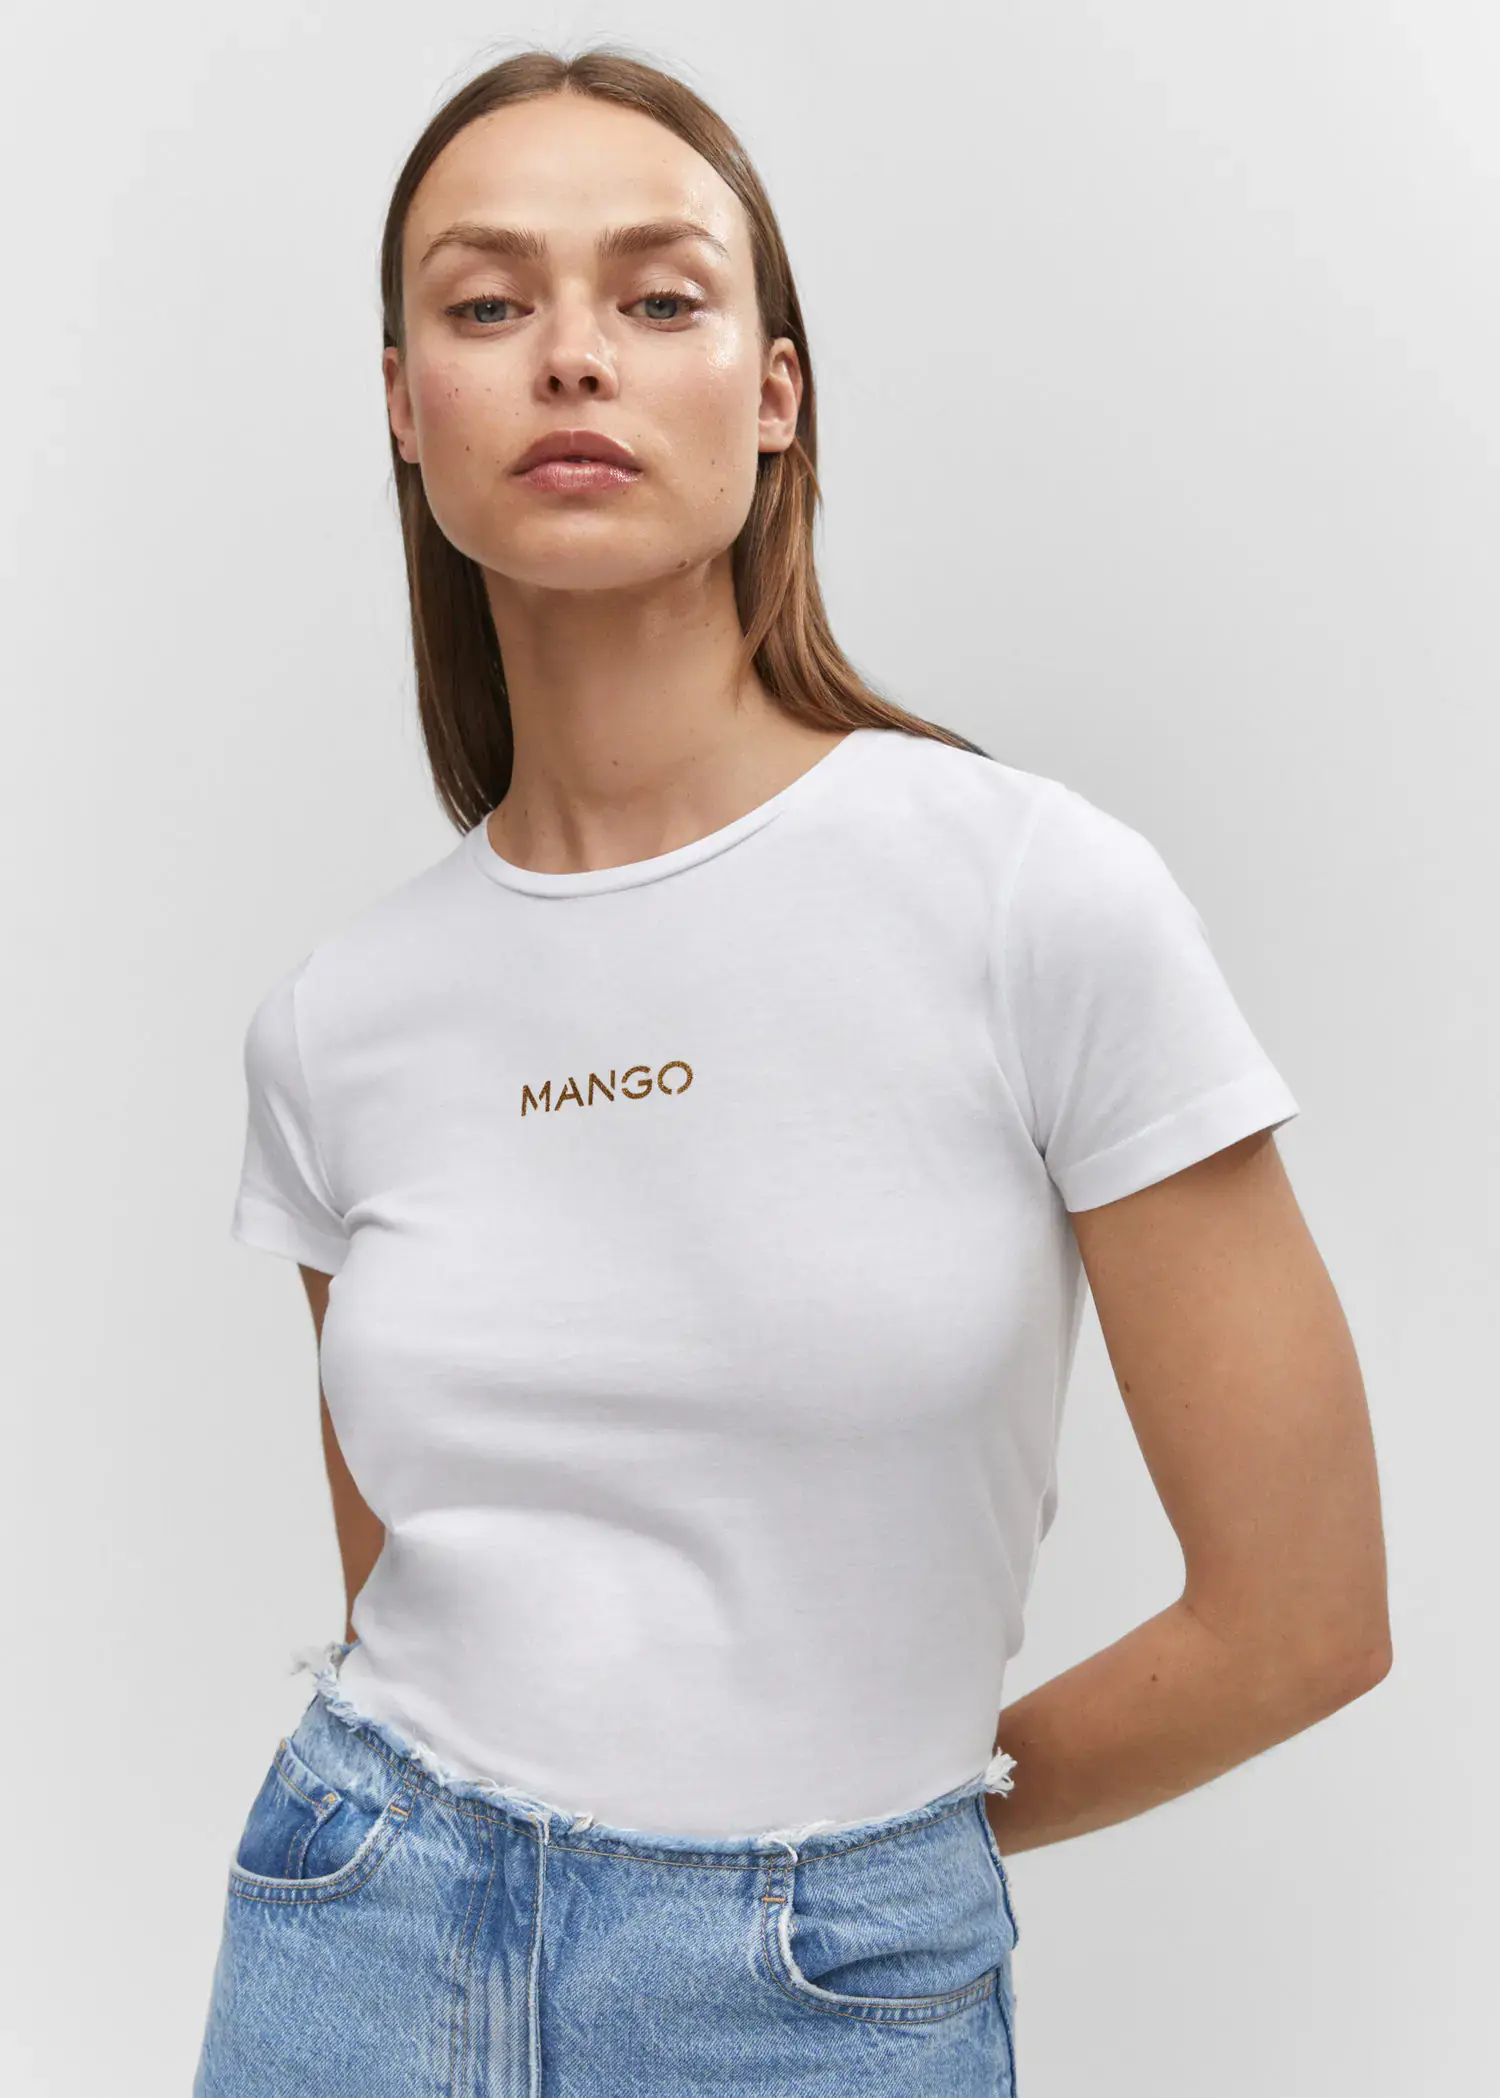 Mango T-shirt logotipo metalizado. 1